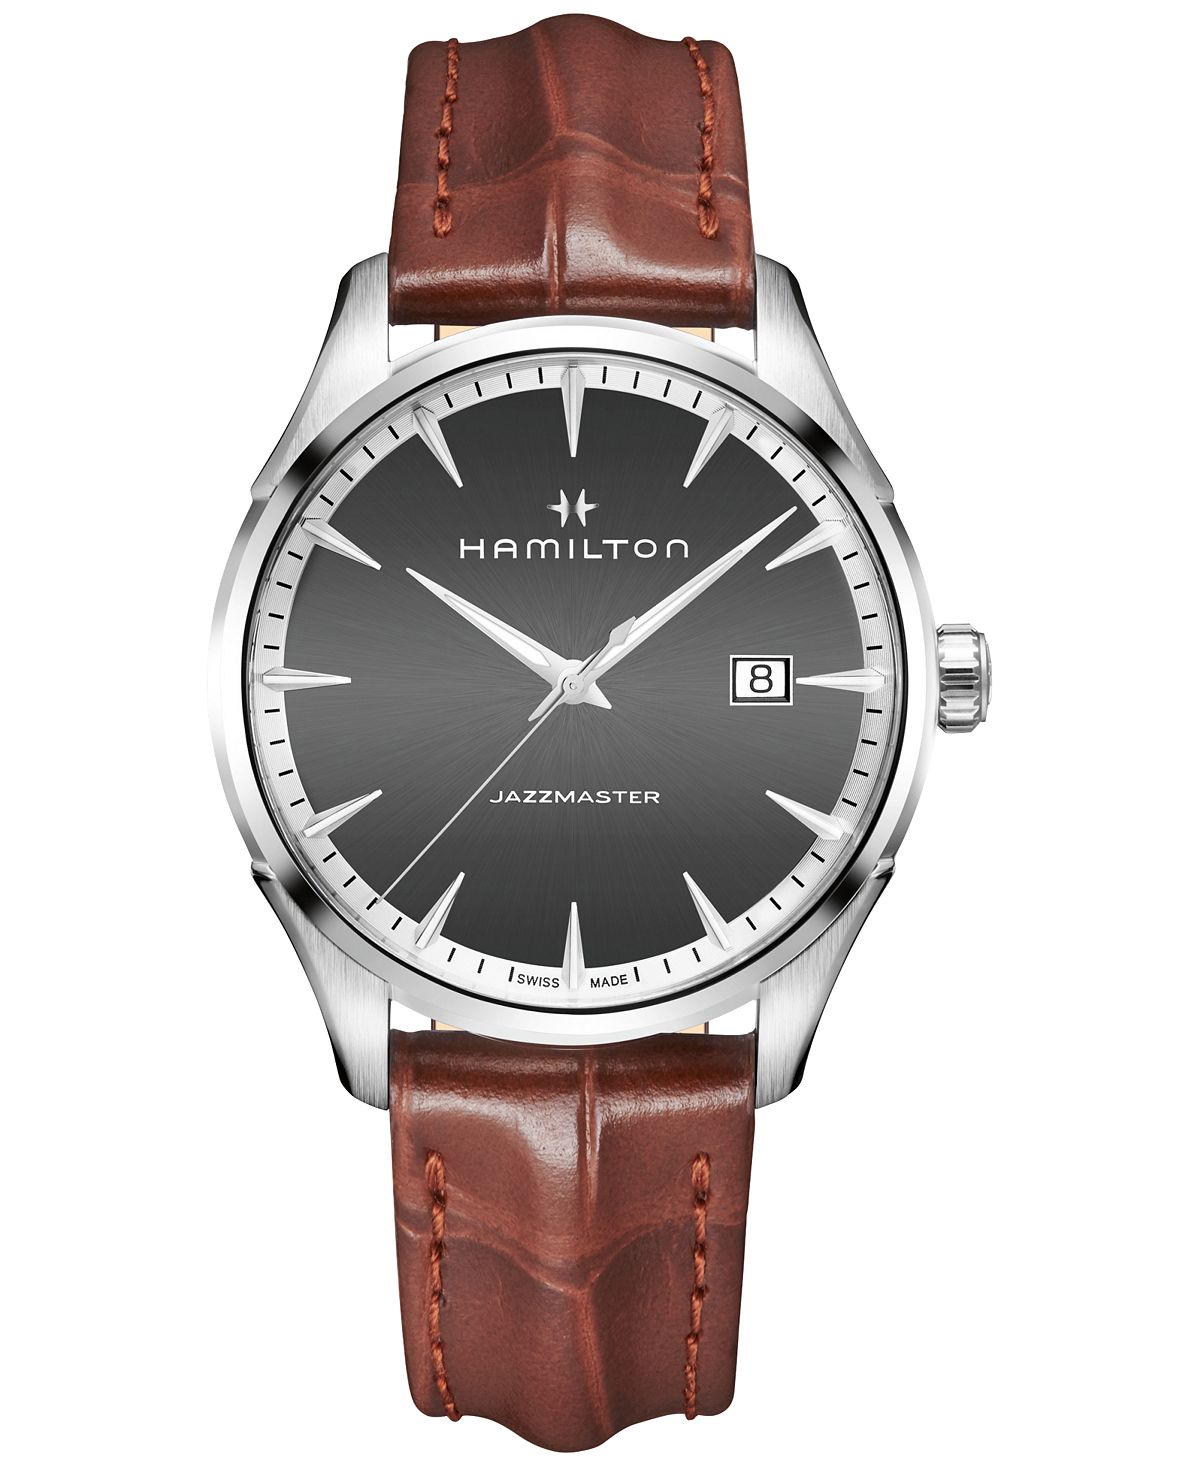 Мужские часы Swiss Jazzmaster светло-коричневого цвета с кожаным ремешком, 40 мм Hamilton часы hamilton jazzmaster chrono quartz h32612741